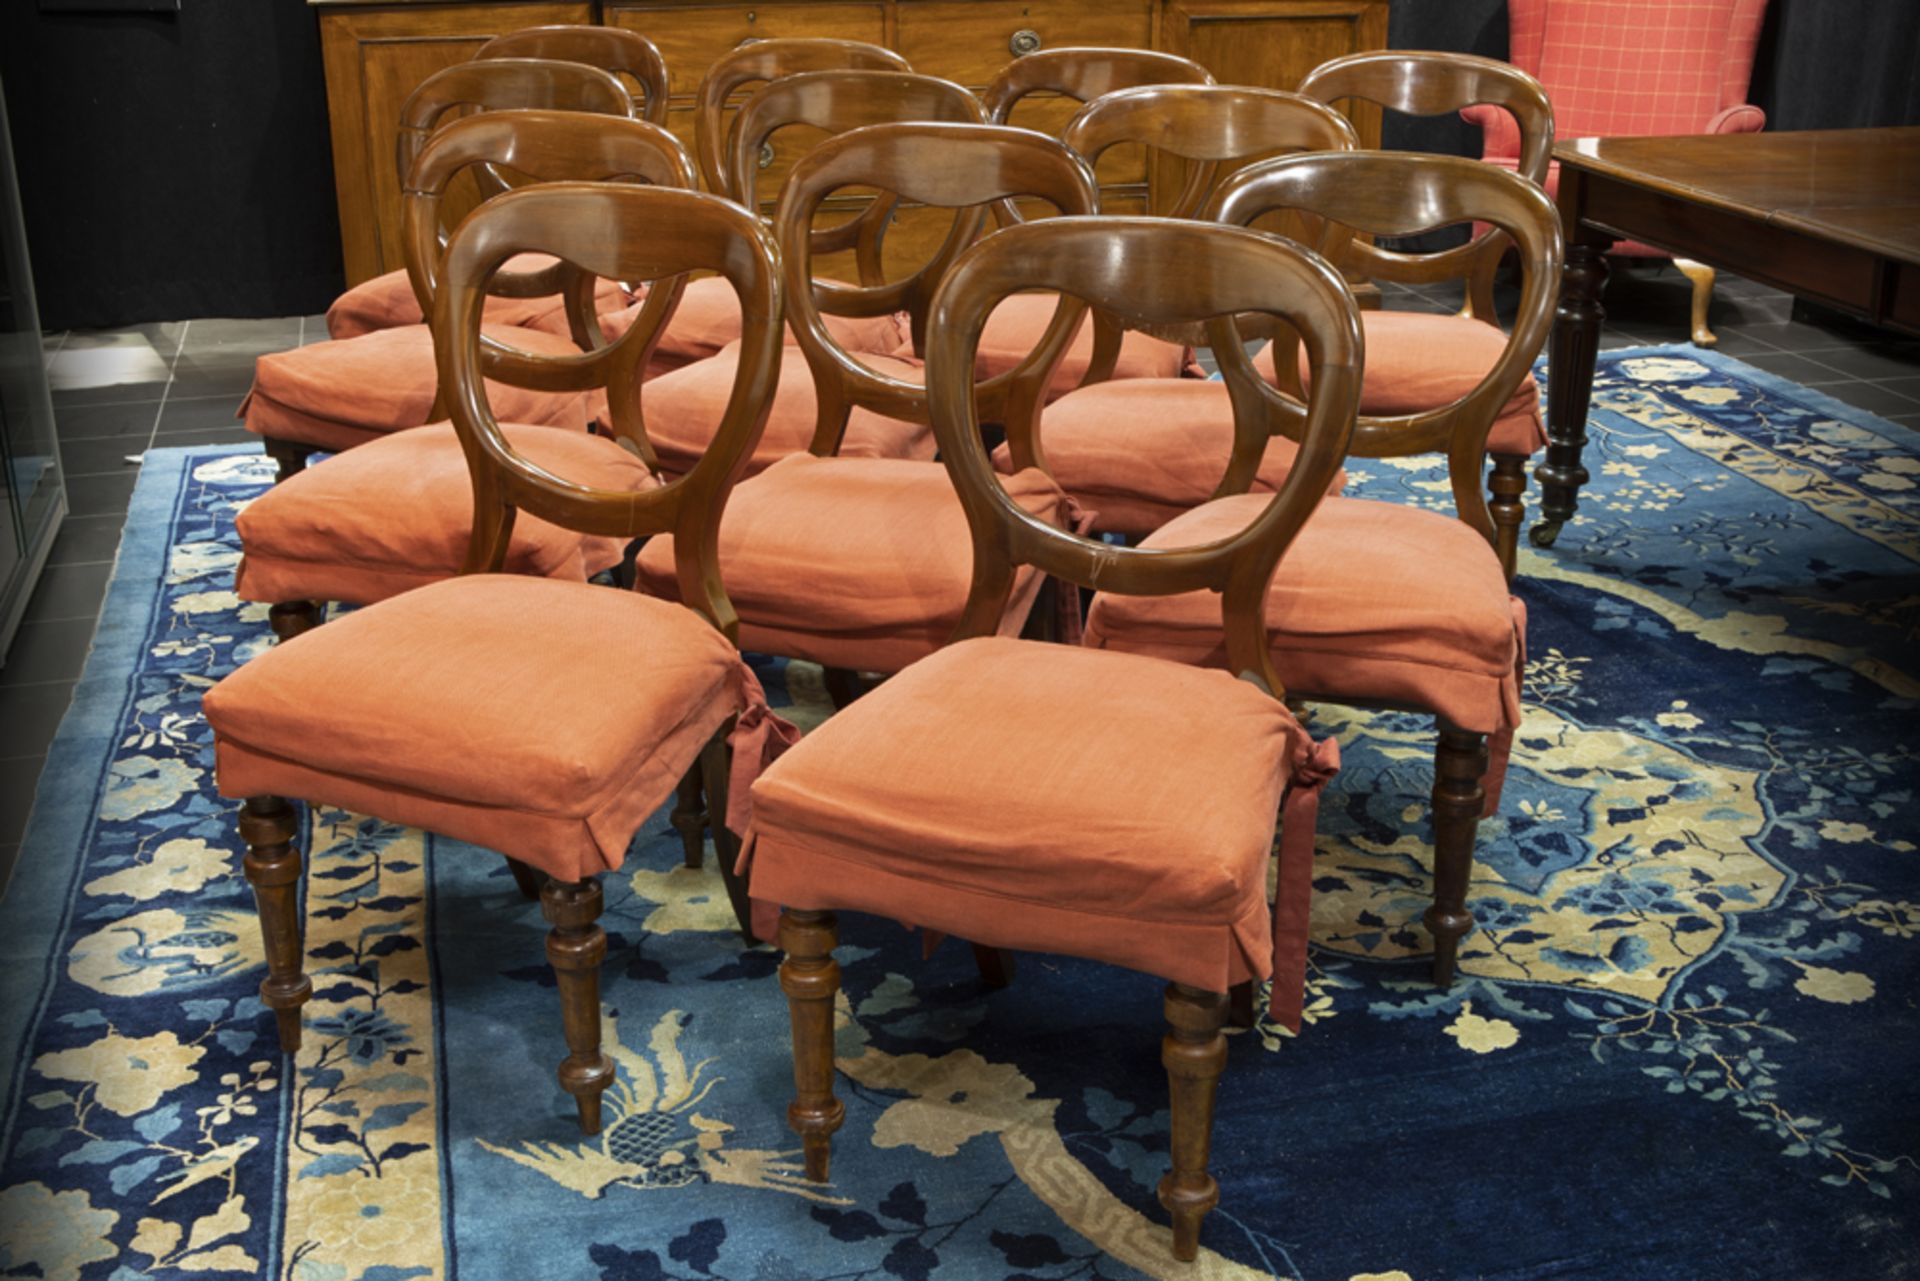 series of twelve antique English chairs in mahogany || Reeks van twaalf antieke Engelse stoelen in